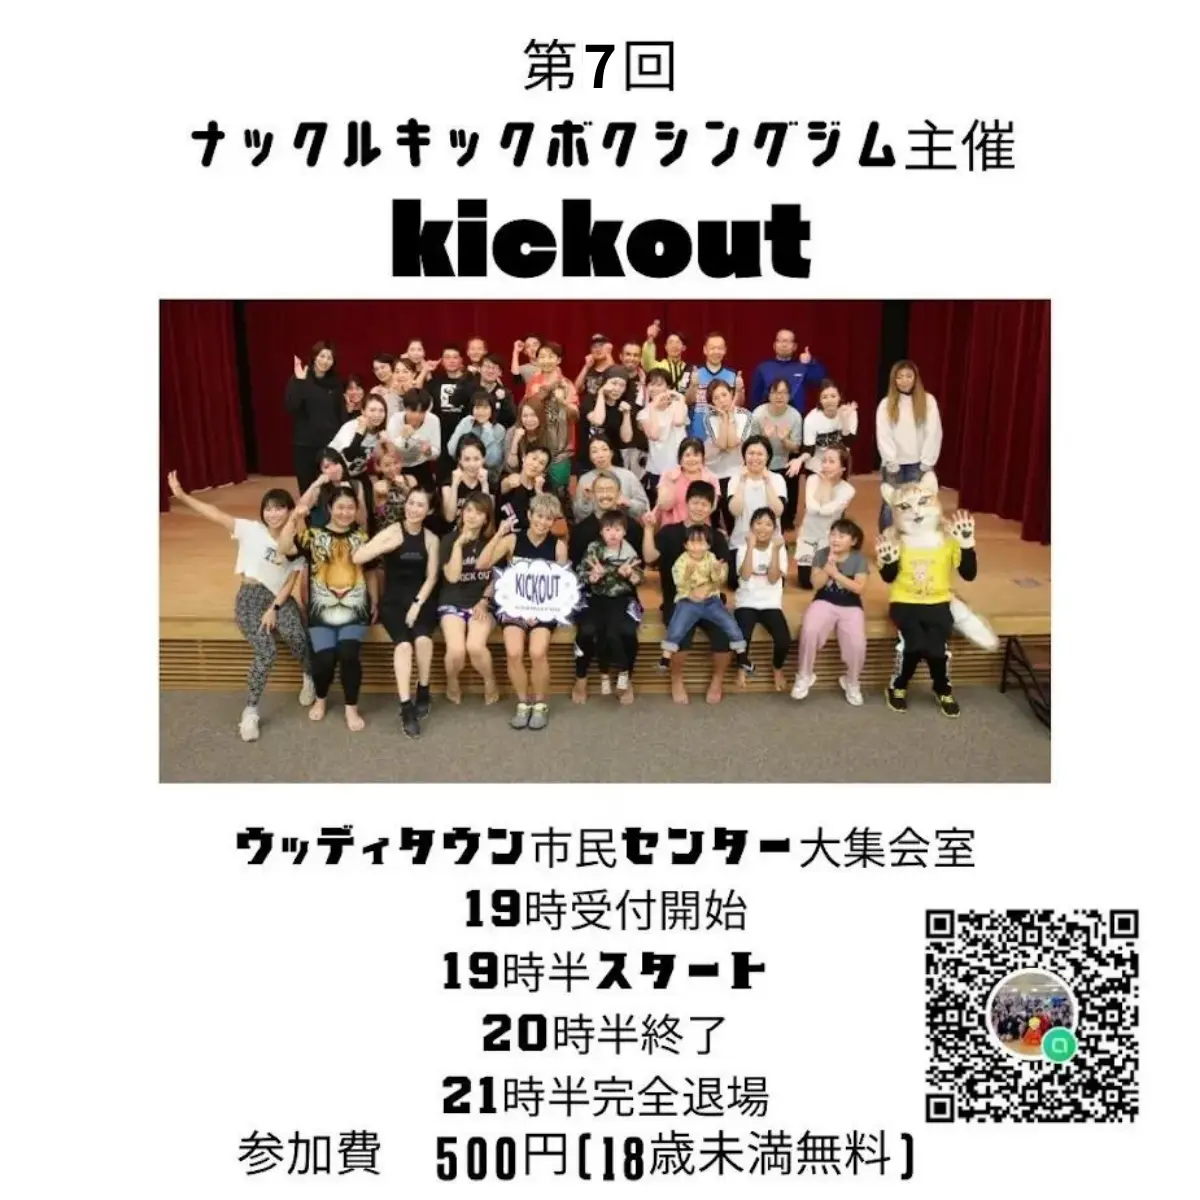 7th-kick-out